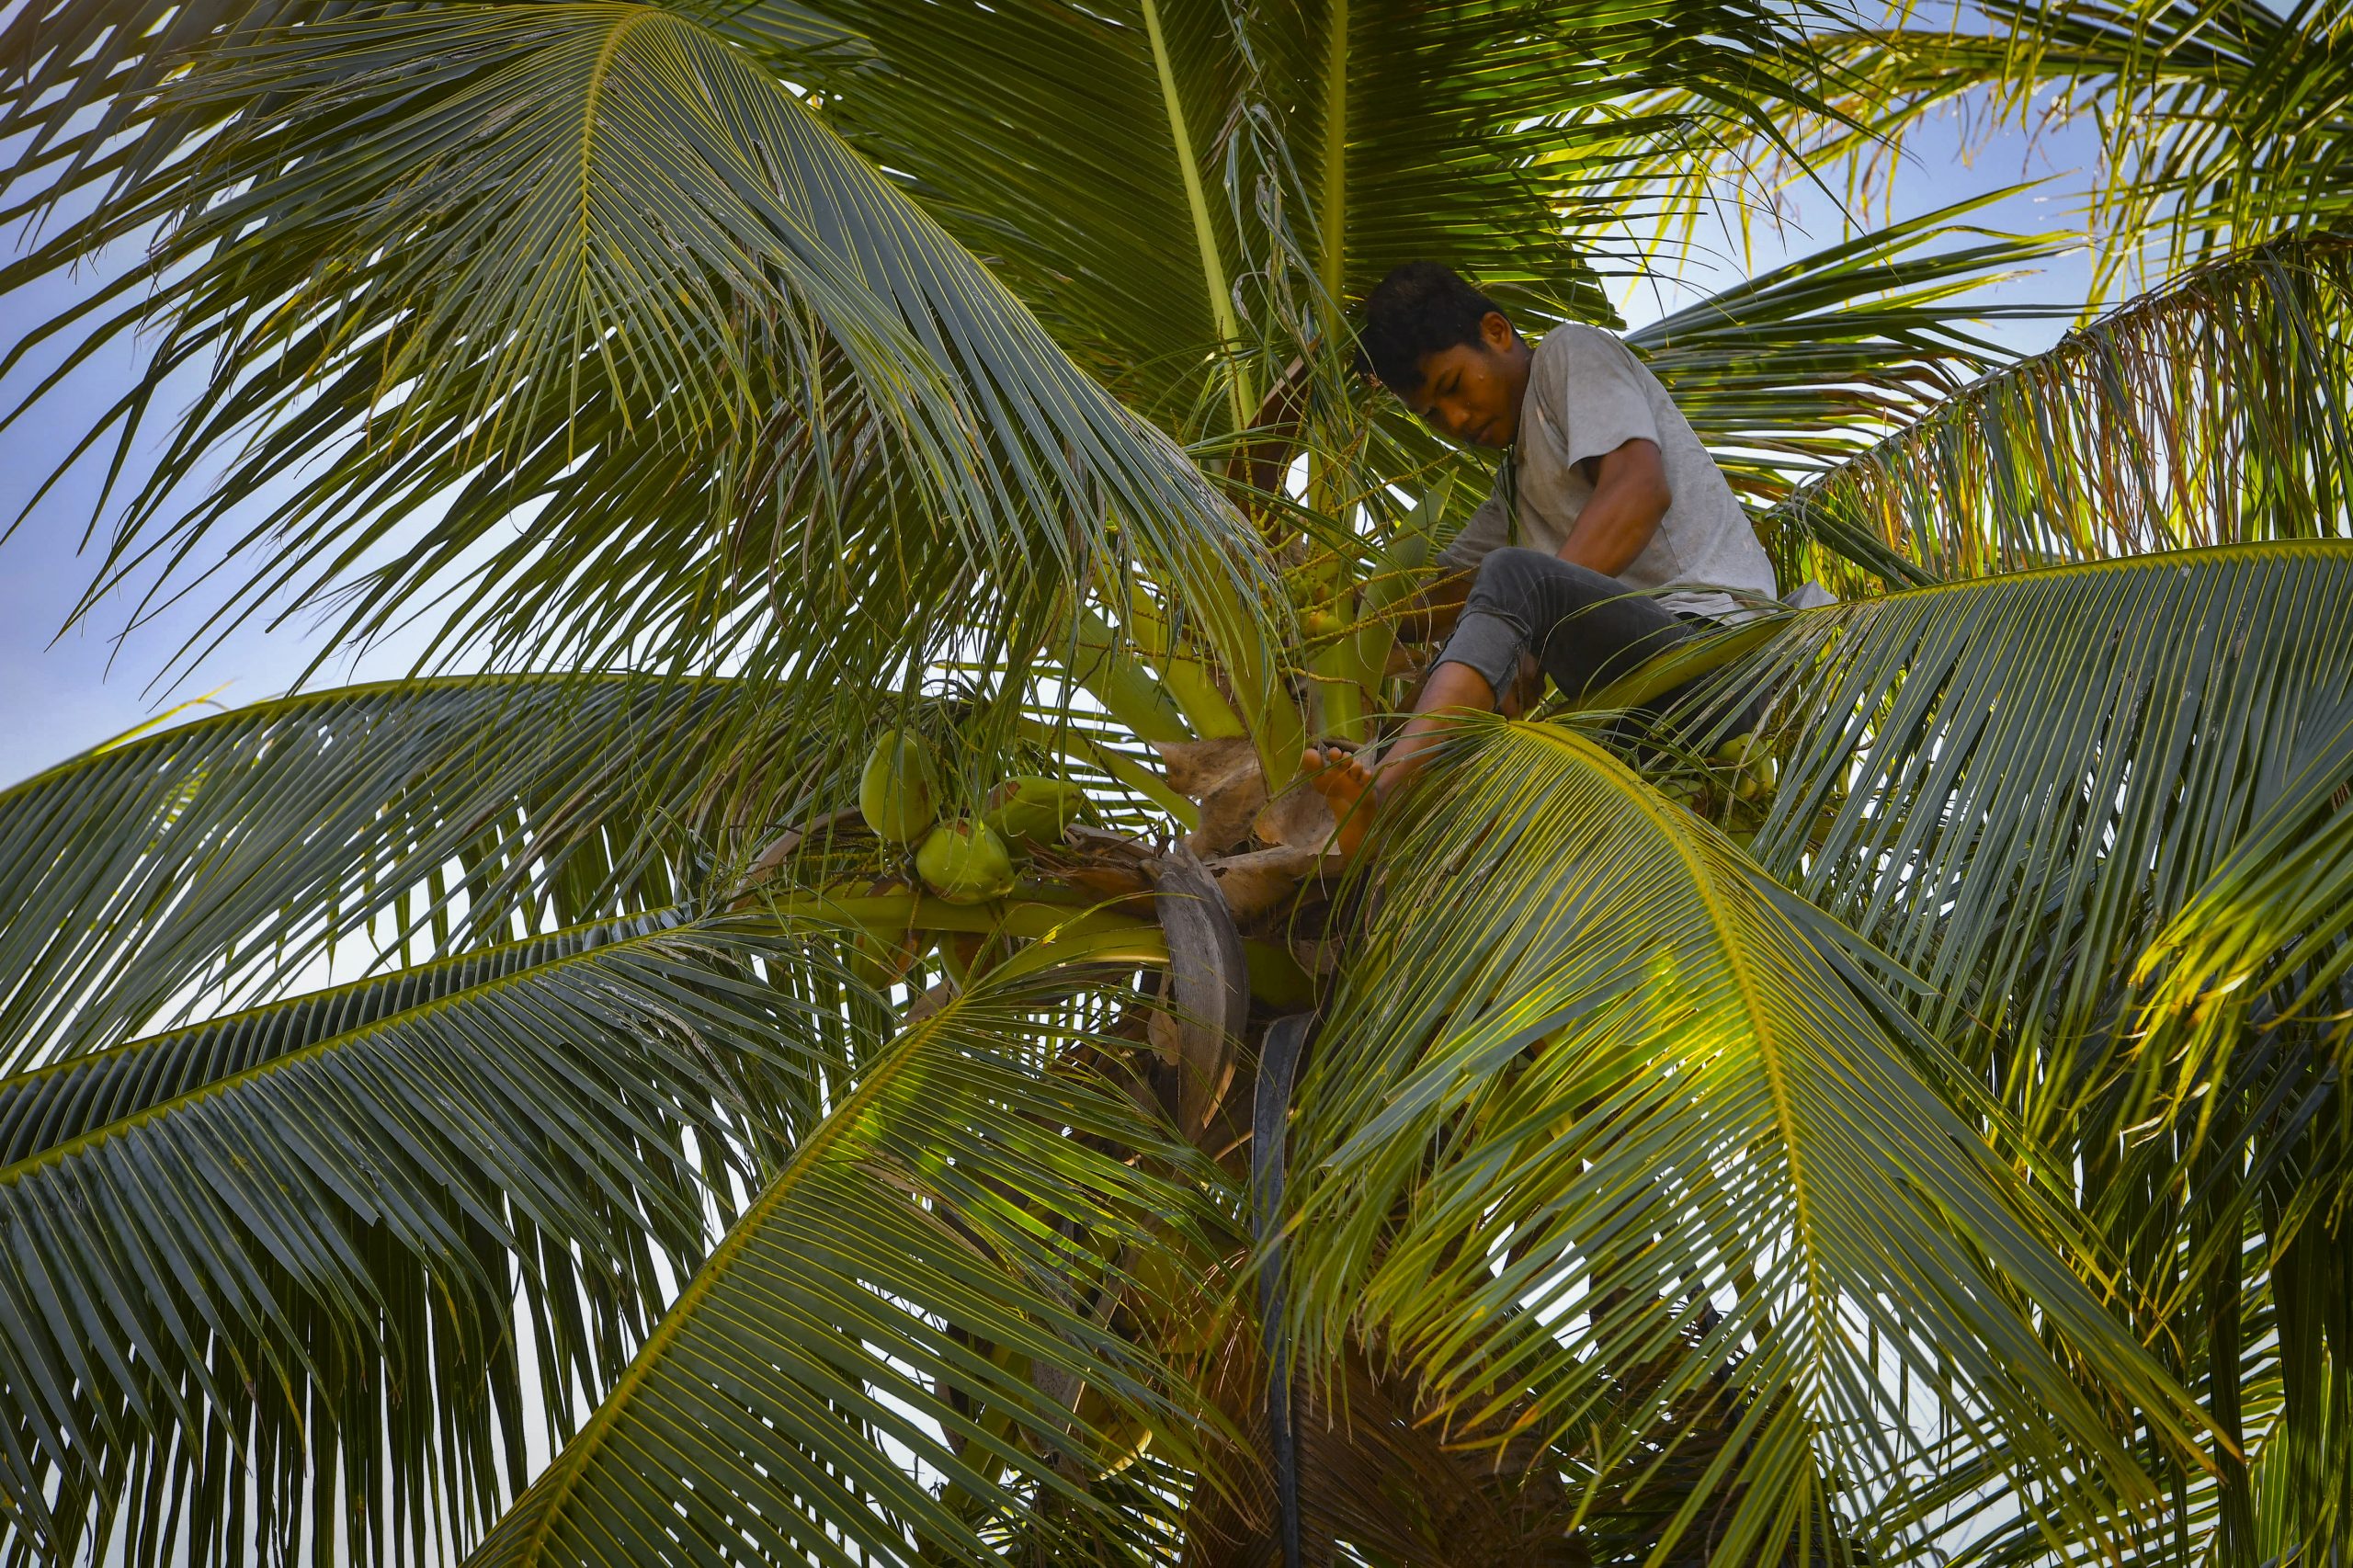 登嘉楼少年动作敏捷 赤脚空拳上树采椰子 